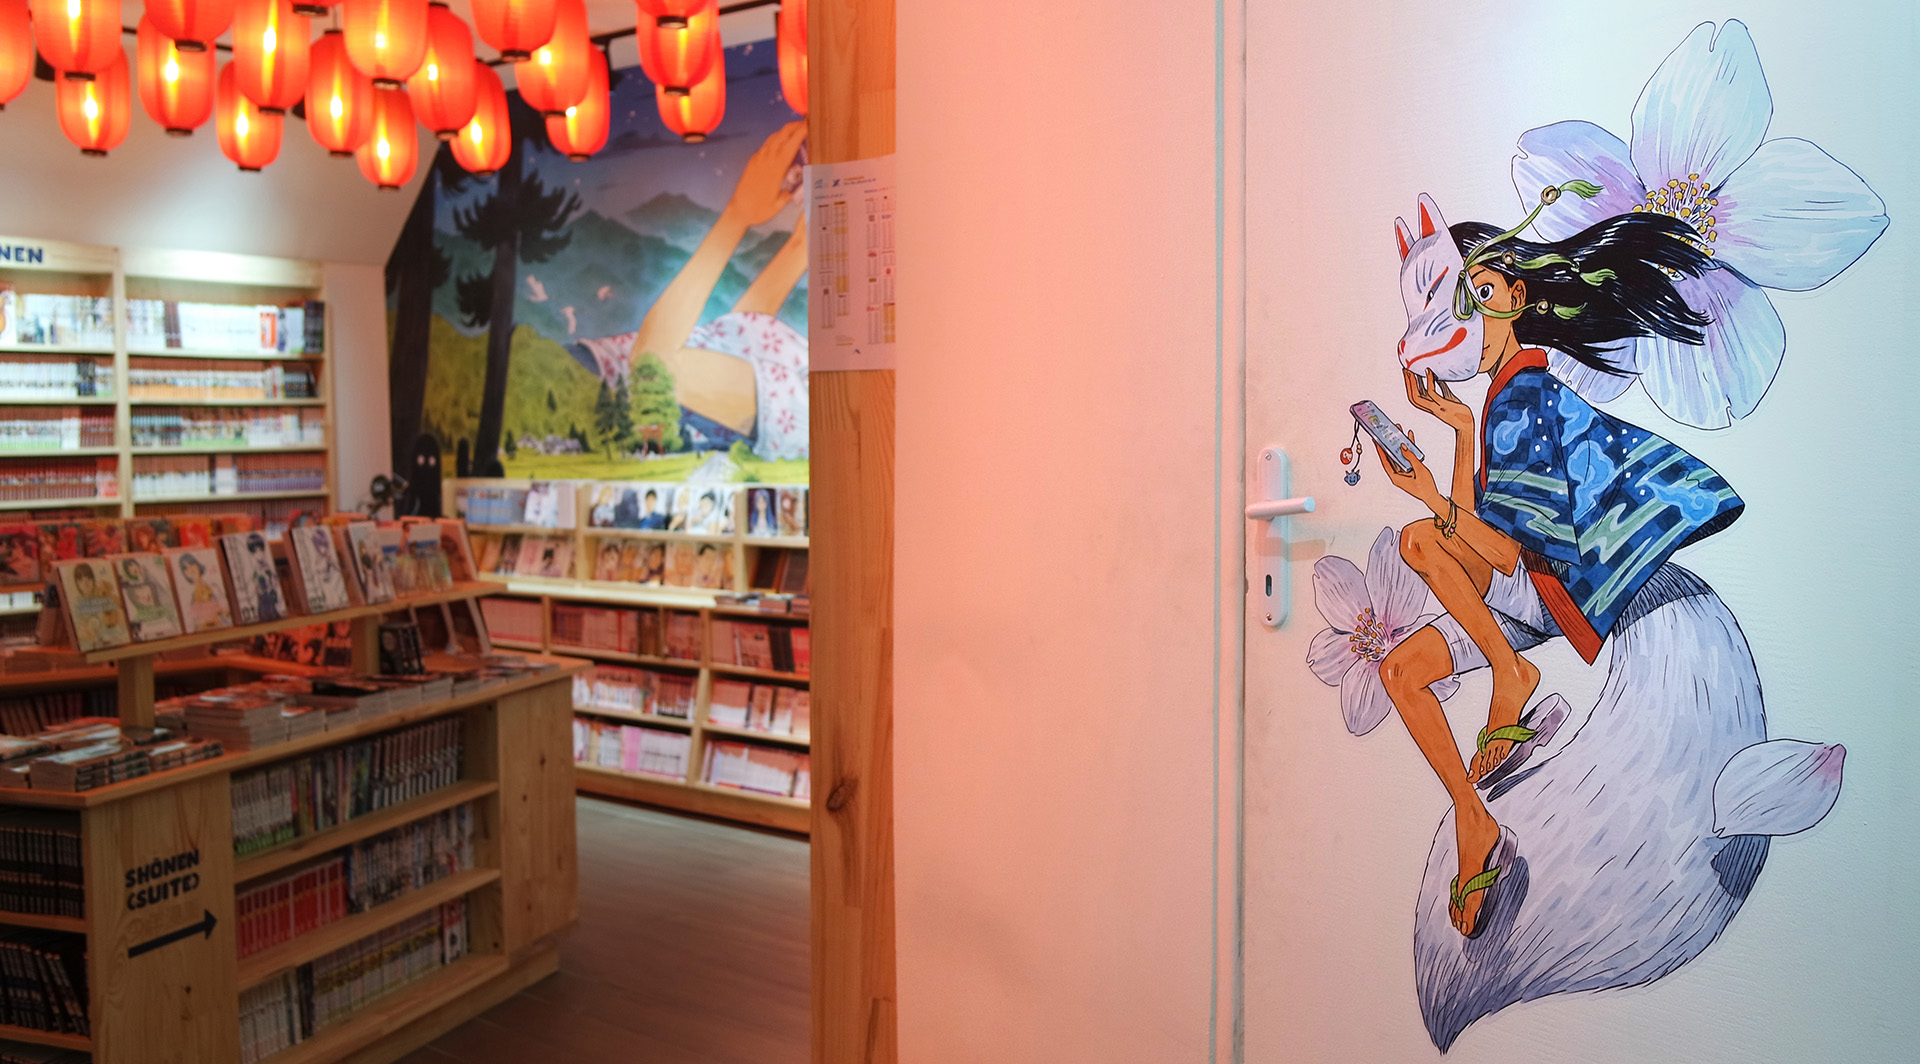 Kitsune yokai frescoe inside a manga store